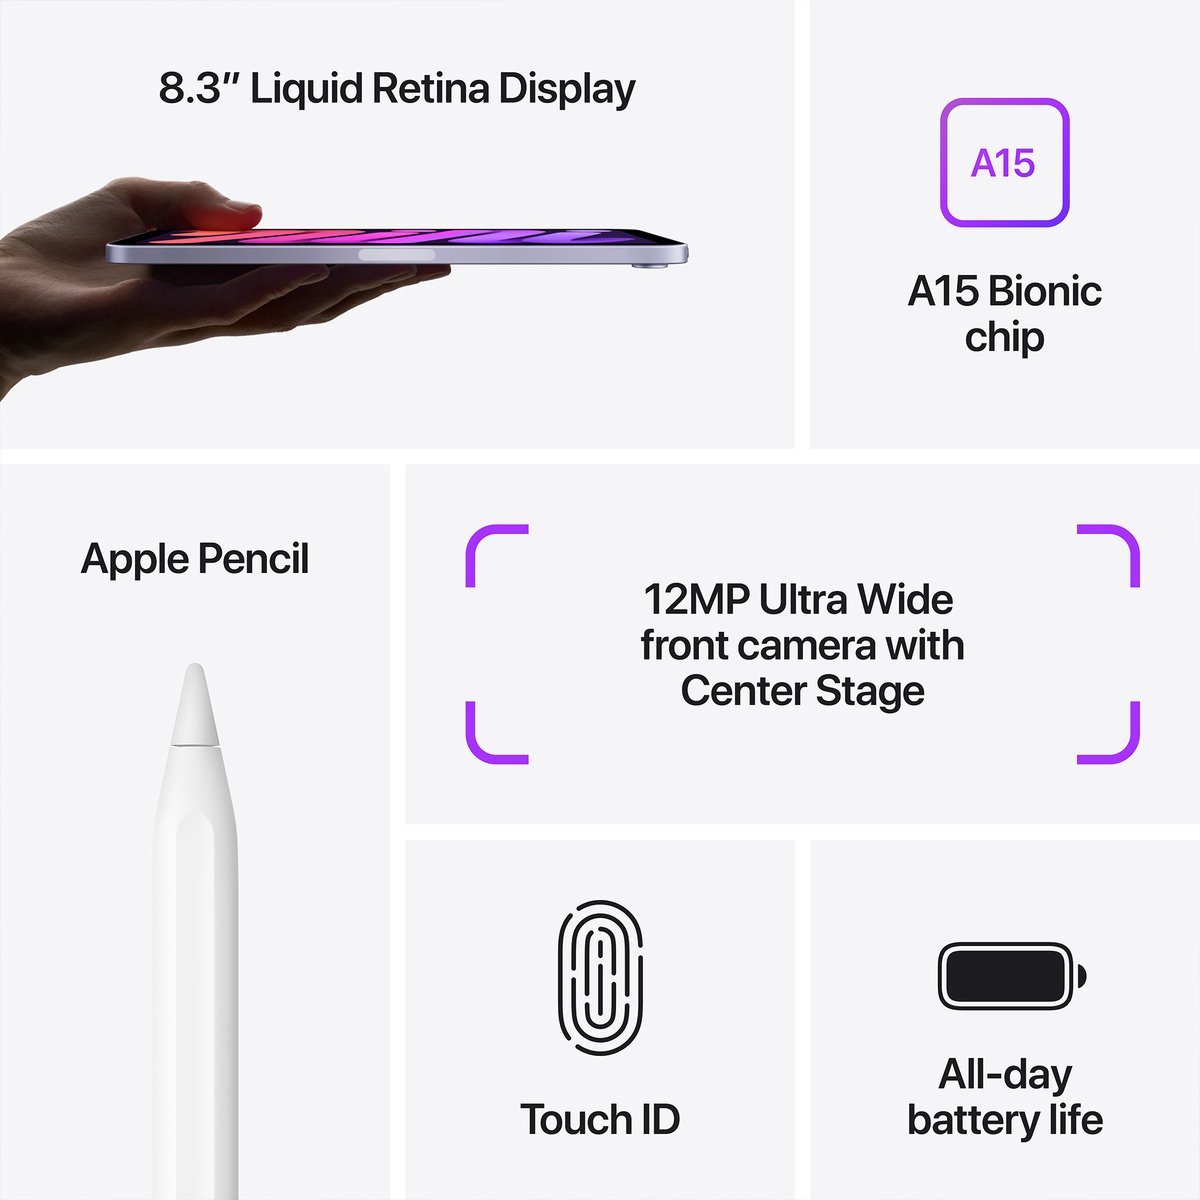 Apple iPad mini 2021 (6th Generation) 8.3-inch, Wi-Fi, 64GB - Purple